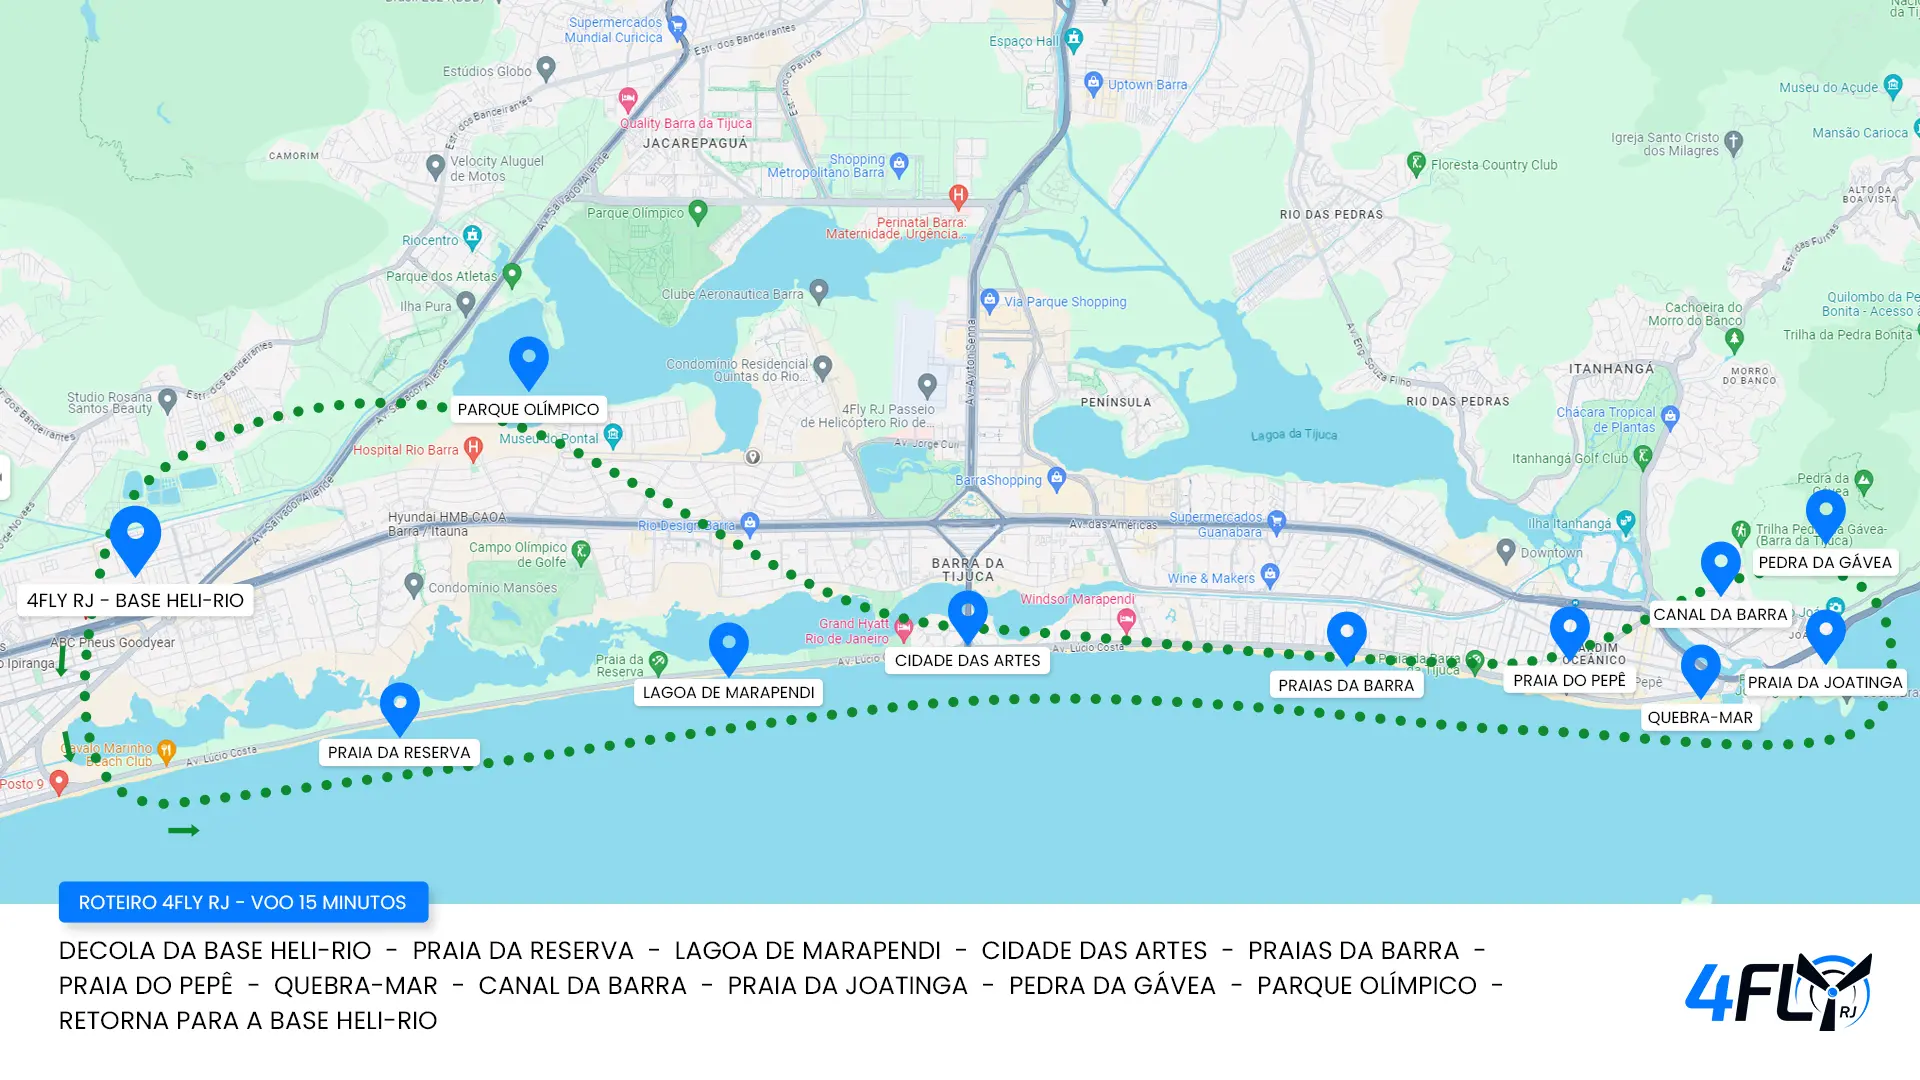 Mapa do roteiro do passeio de helicóptero no Rio de Janeiro 15 minutos - 4Fly RJ